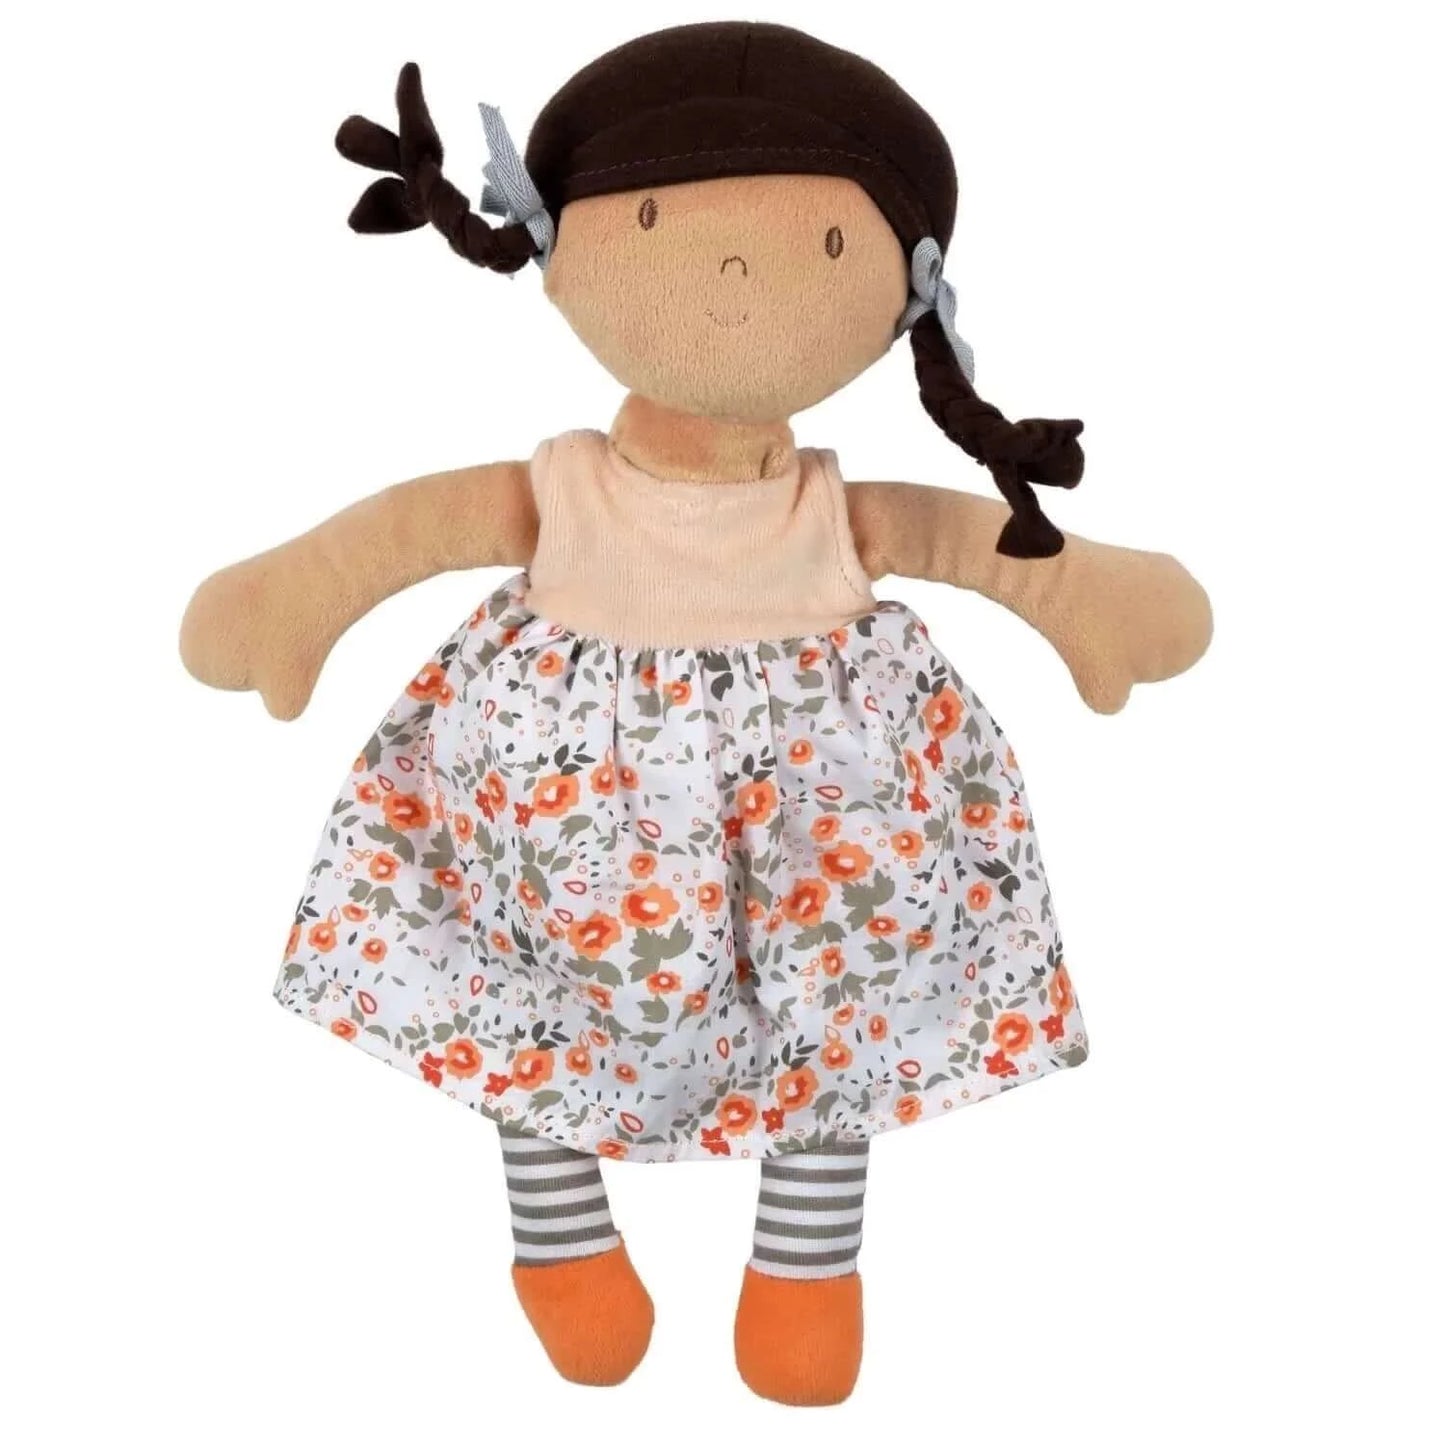 Aleah - Black Hair Doll with Heat Pack, Tikiri Toys, eco-friendly Toys, Mountain Kids Toys